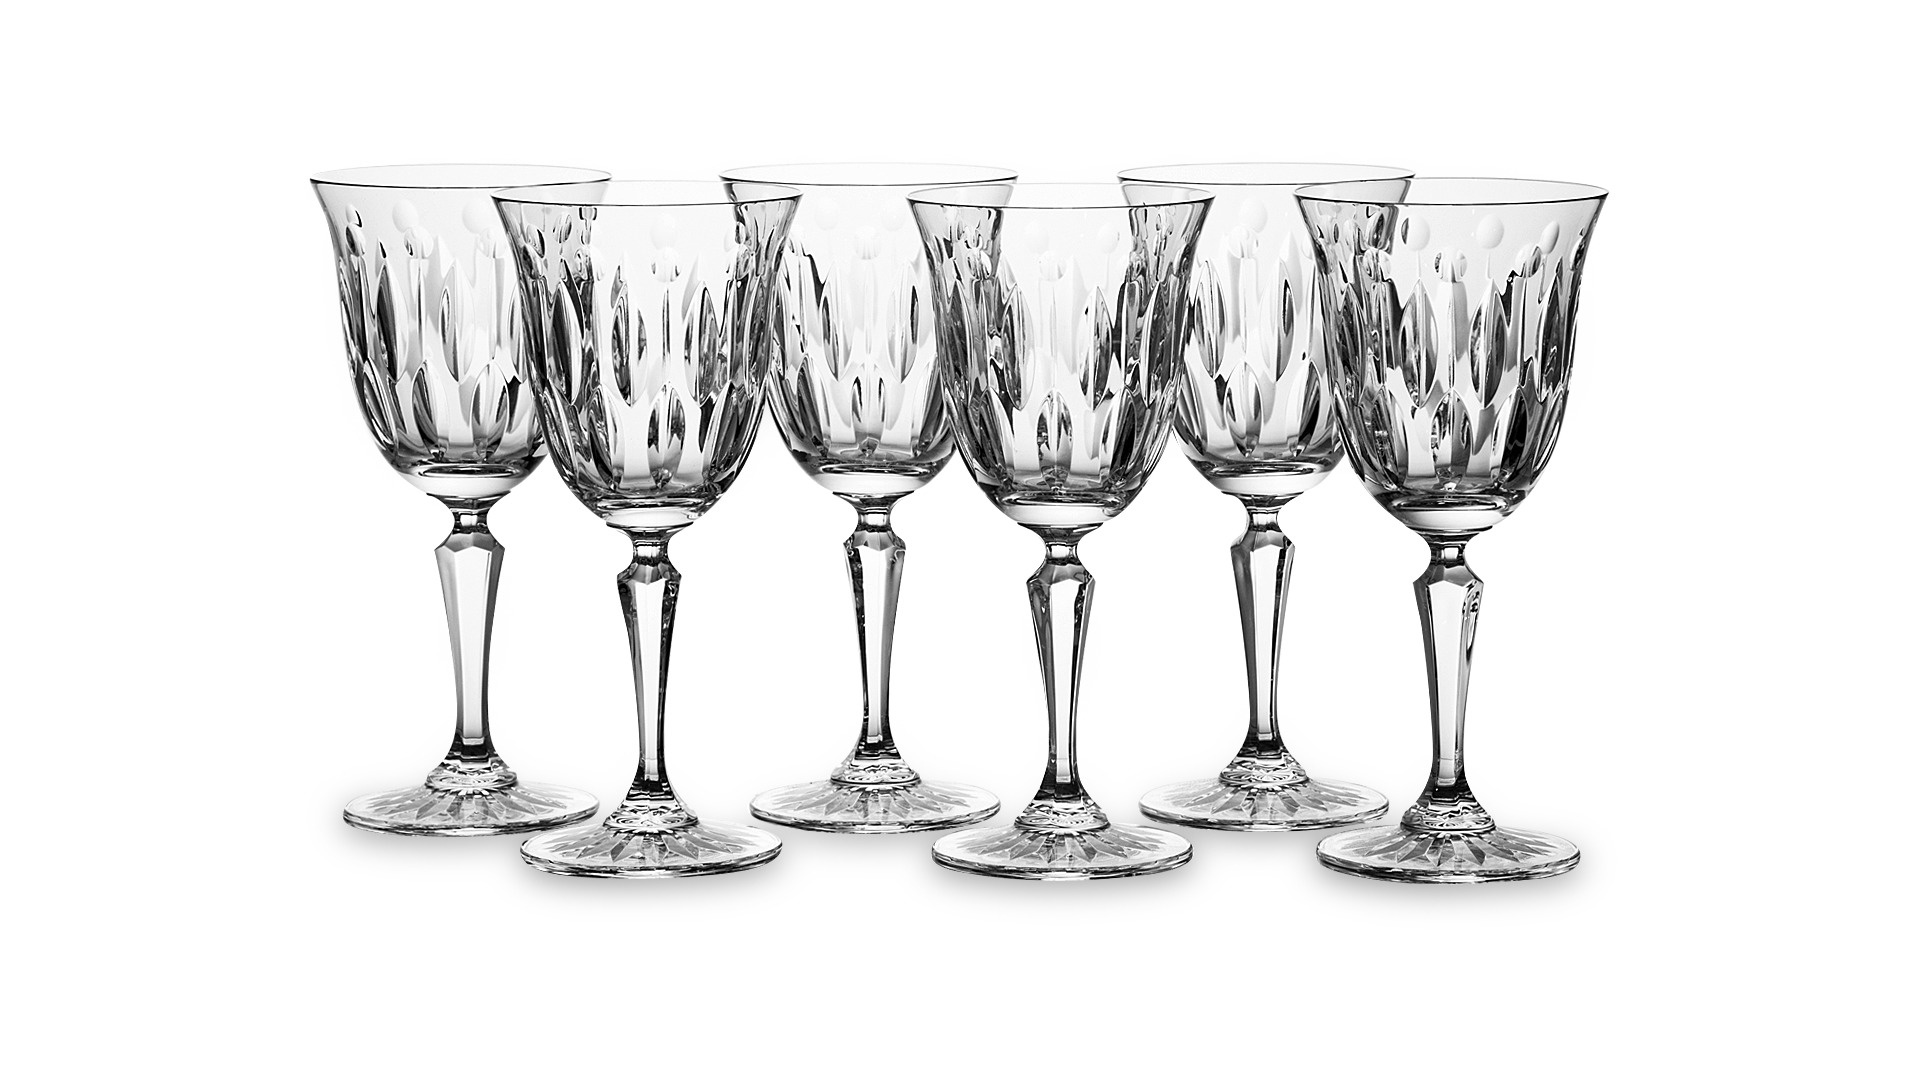 Набор бокалов для вина Cristal de Paris Барселона 300мл, 6 шт